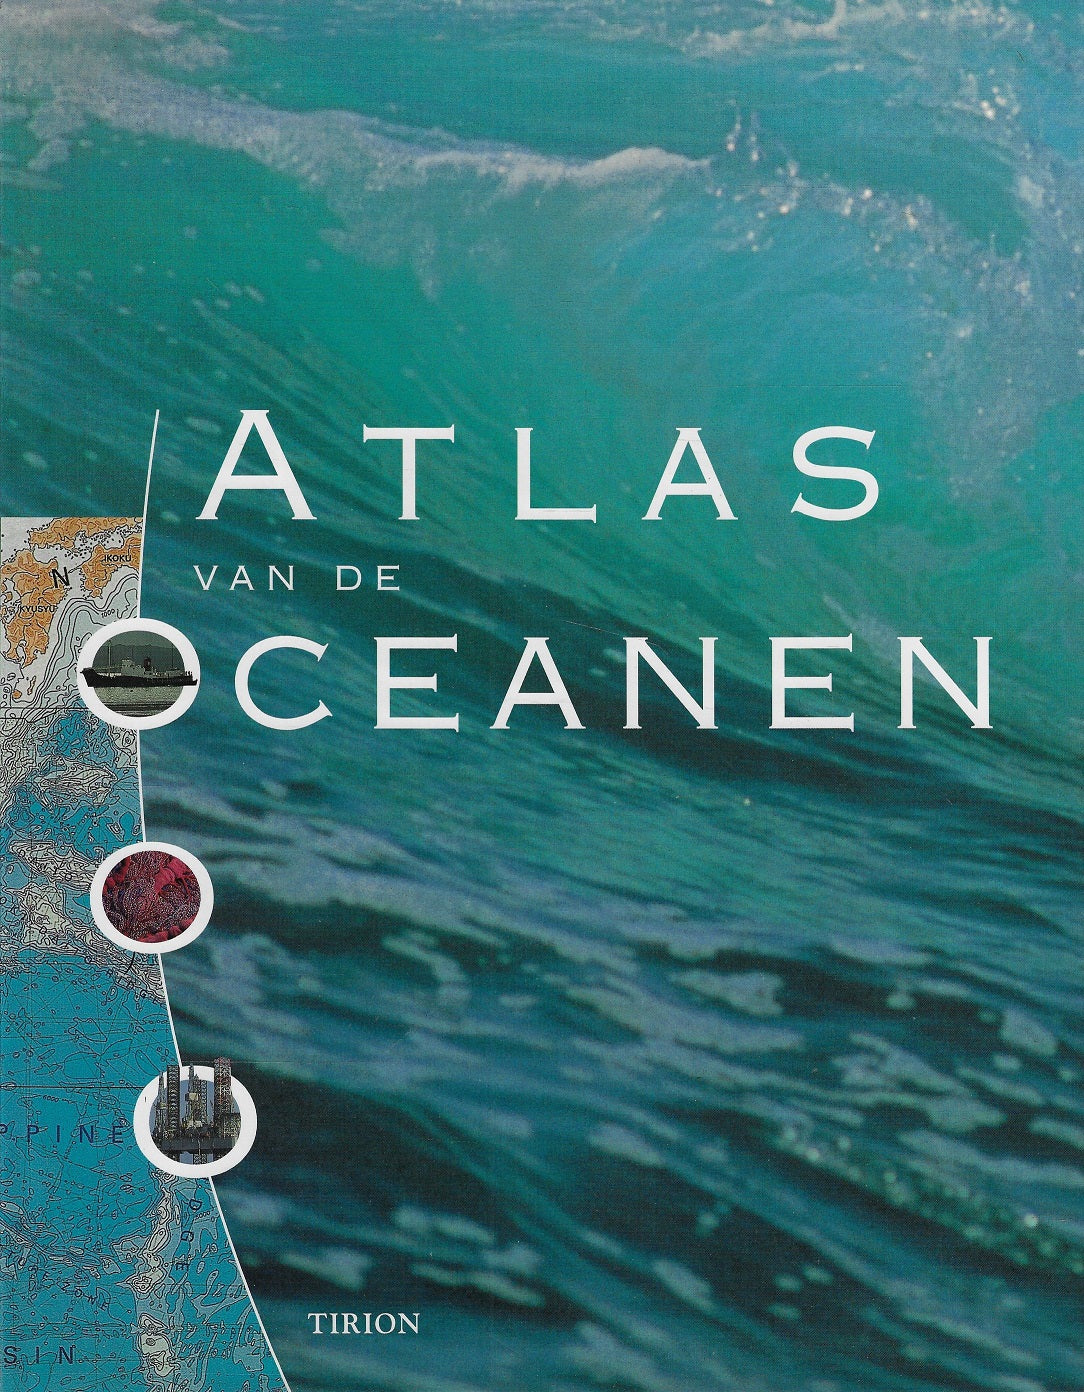 Atlas van de oceanen